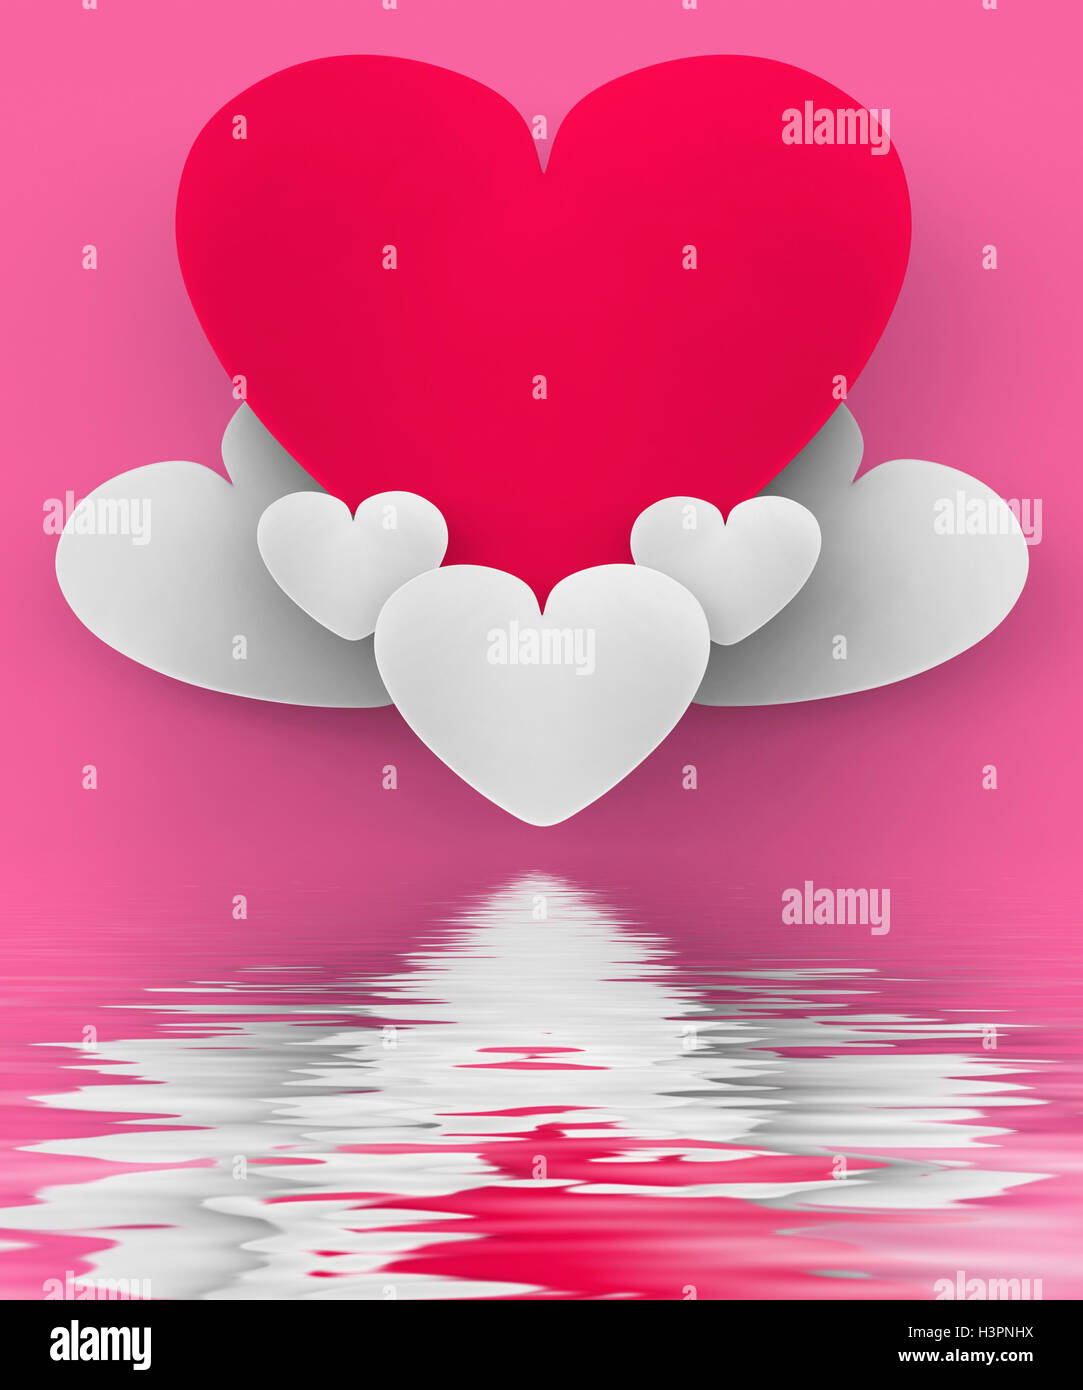 Coeur sur coeur romantique ciel nuages affiche ou dans l'amour Sensat Banque D'Images